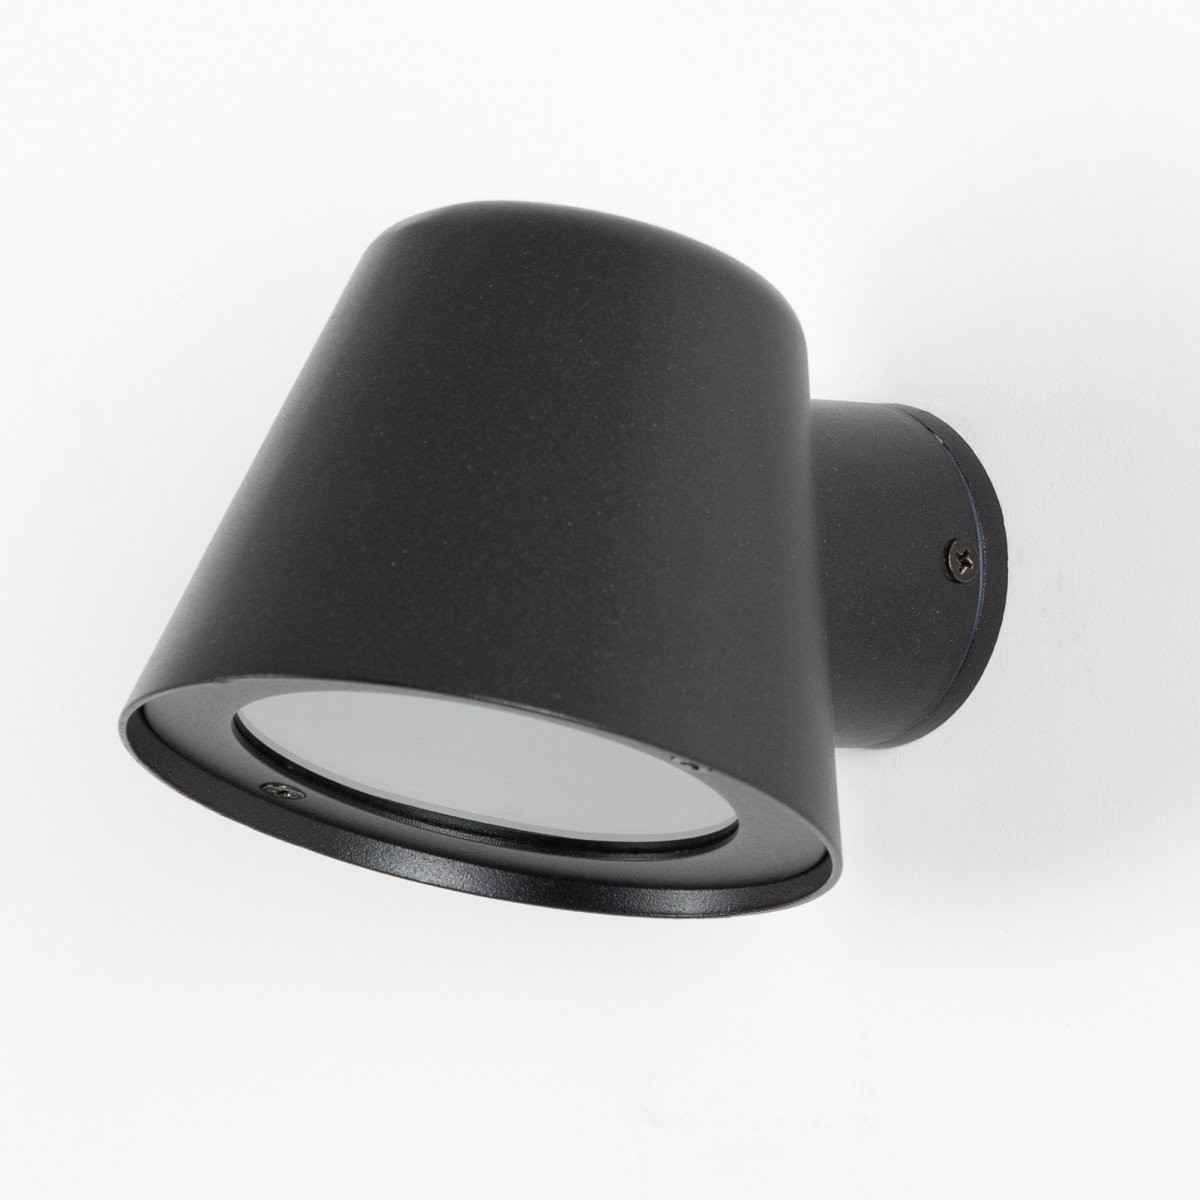 Muurspot Vita Cup matzwart, stoere stijlvol vormgegeven wandverlichting voor gefocust licht GU10 wandspot 